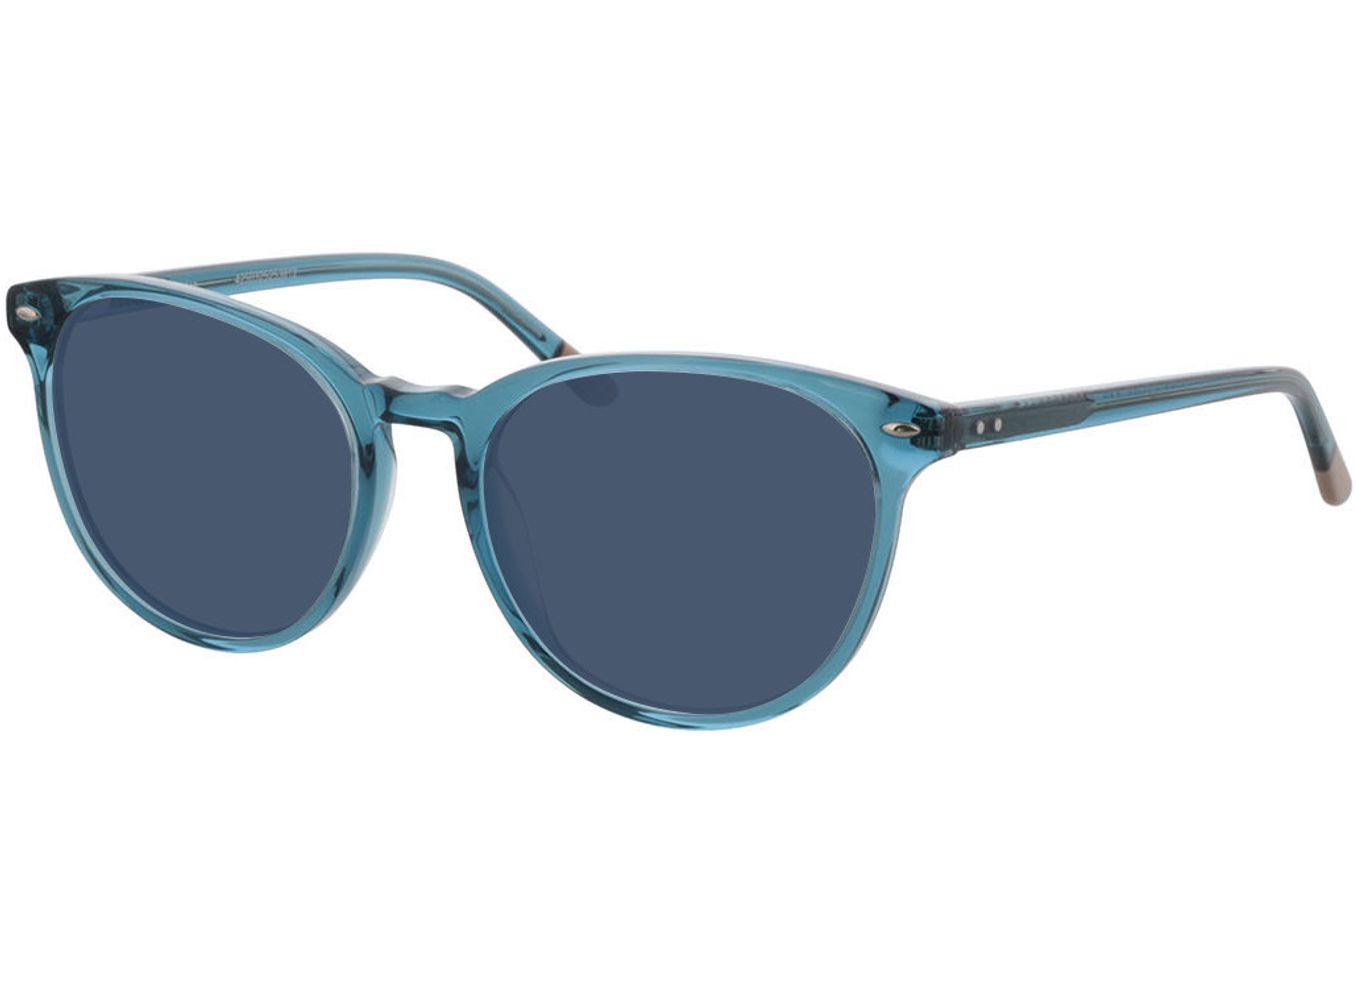 London - blau Sonnenbrille mit Sehstärke, Vollrand, Rund von Brille24 Collection